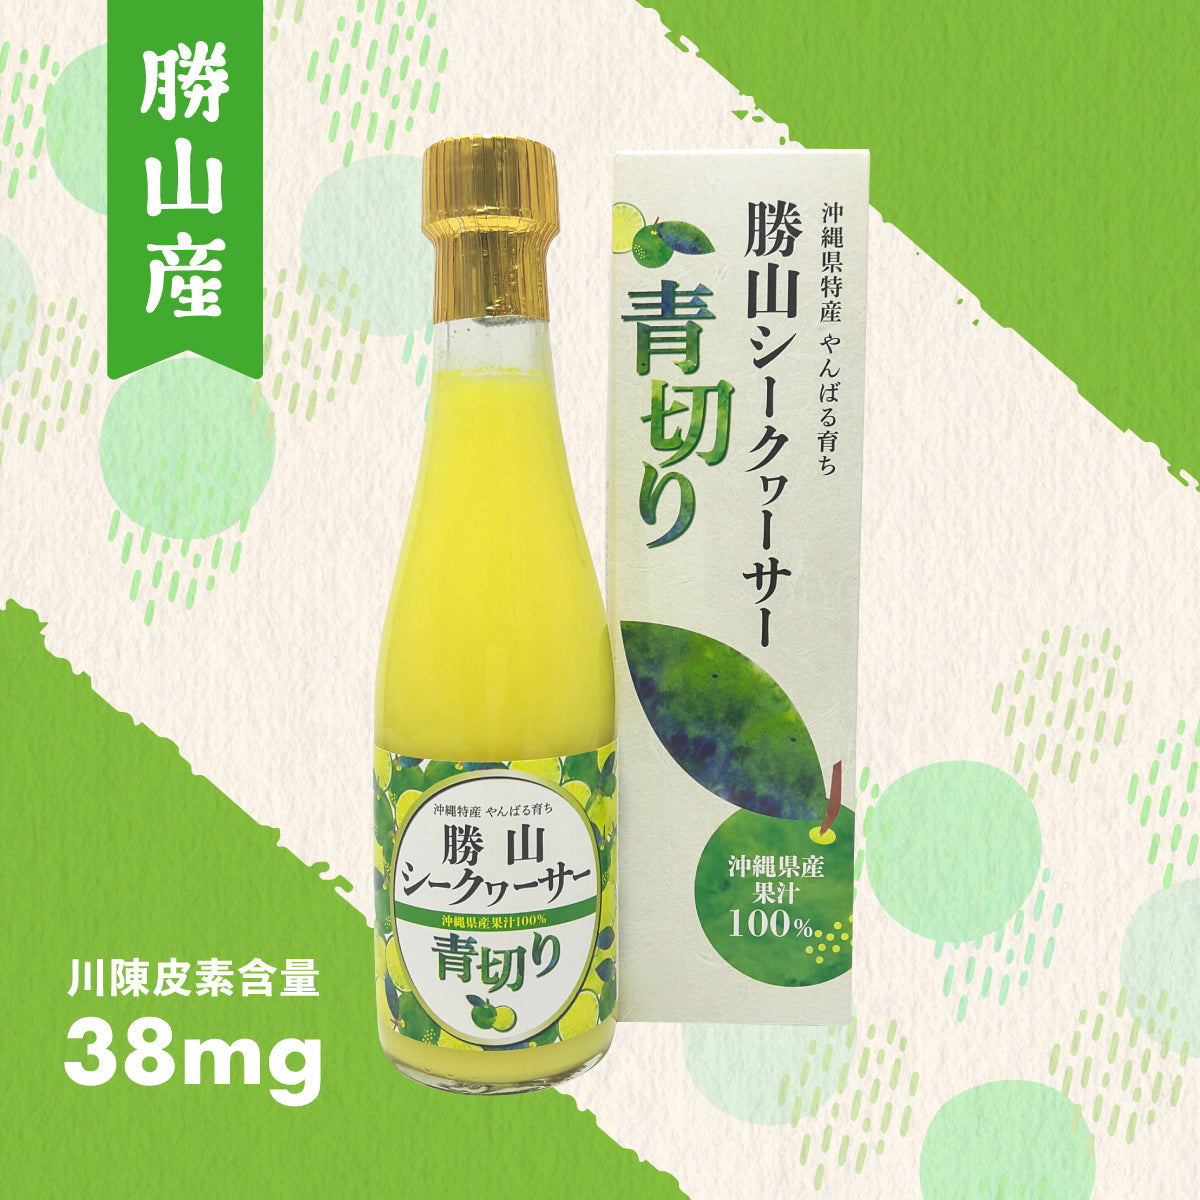 【買一送一】勝山青切香檸濃縮果汁 300ml【即期貨優惠】